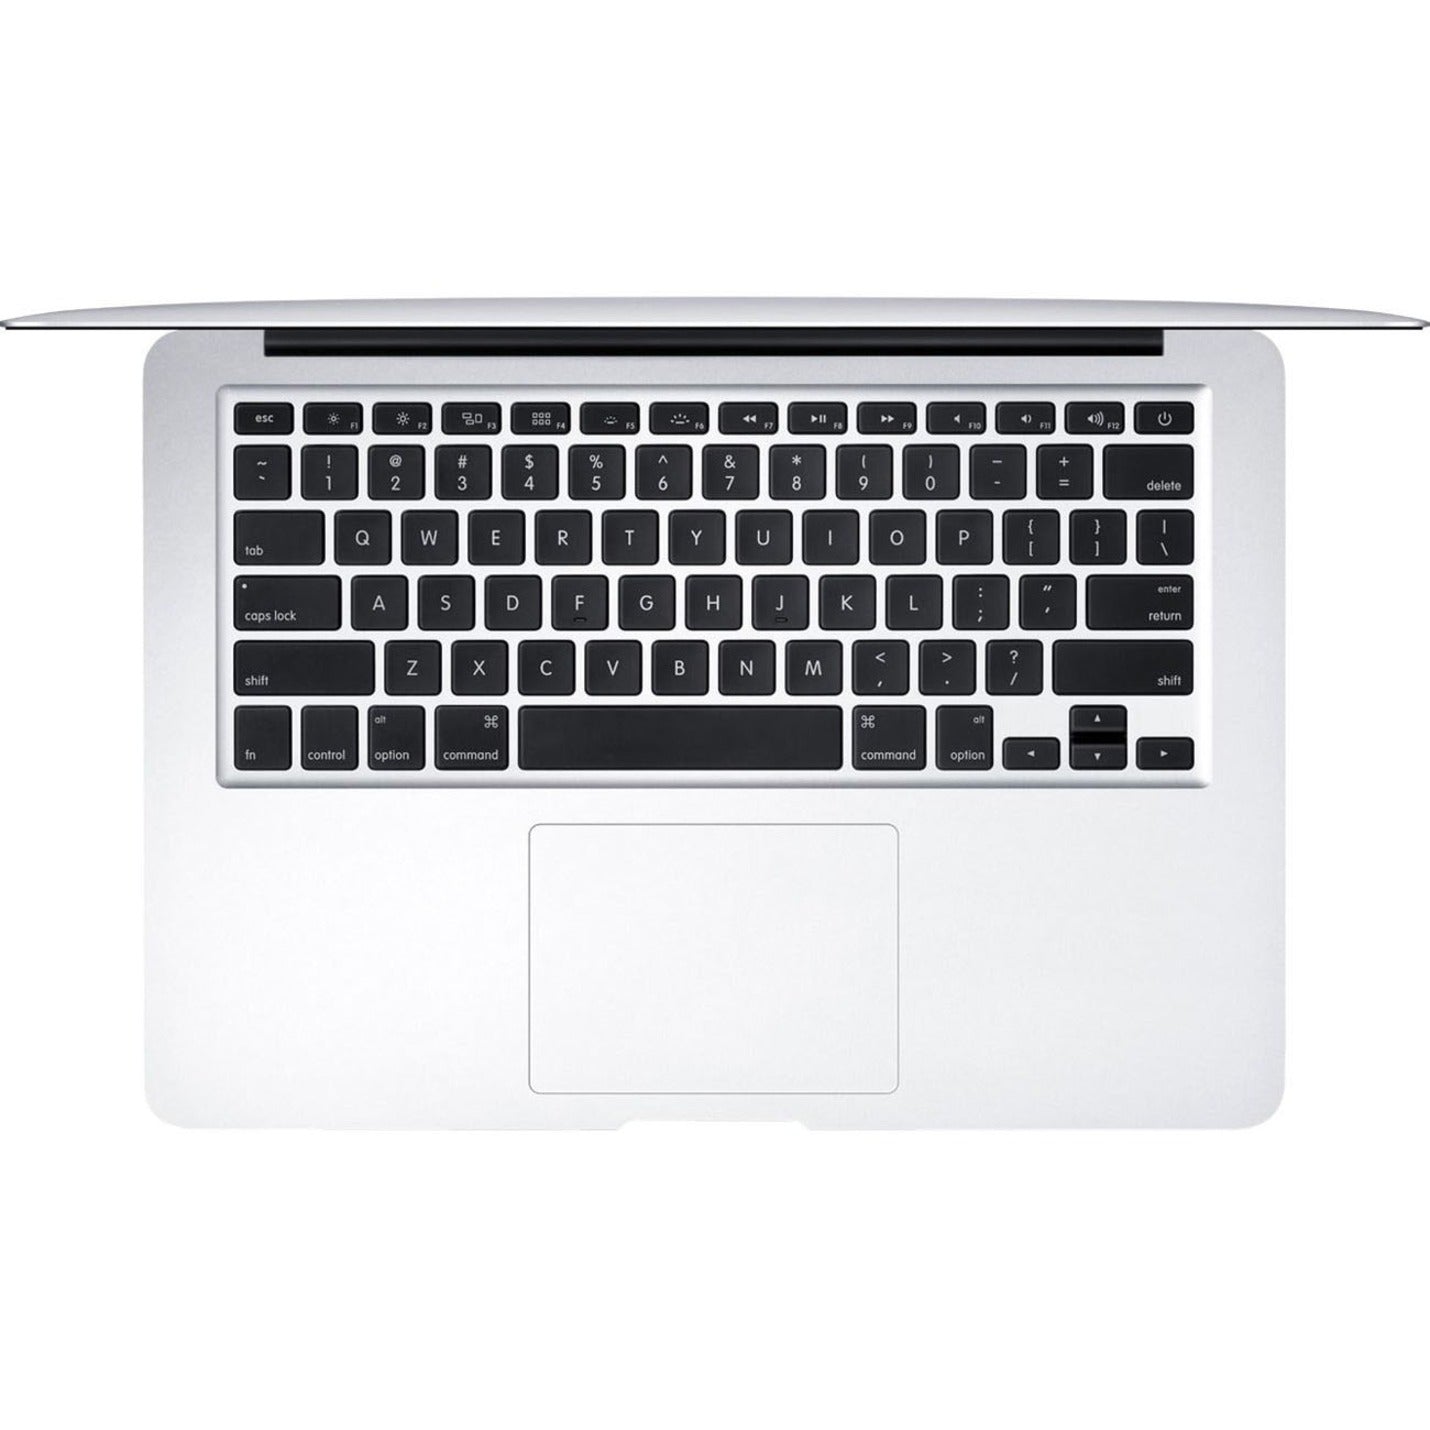 Apple MJVG2LL/A MacBook Air 13-inch, 4GB RAM, 256GB SSD, Mac OS X 10.10 Yosemite